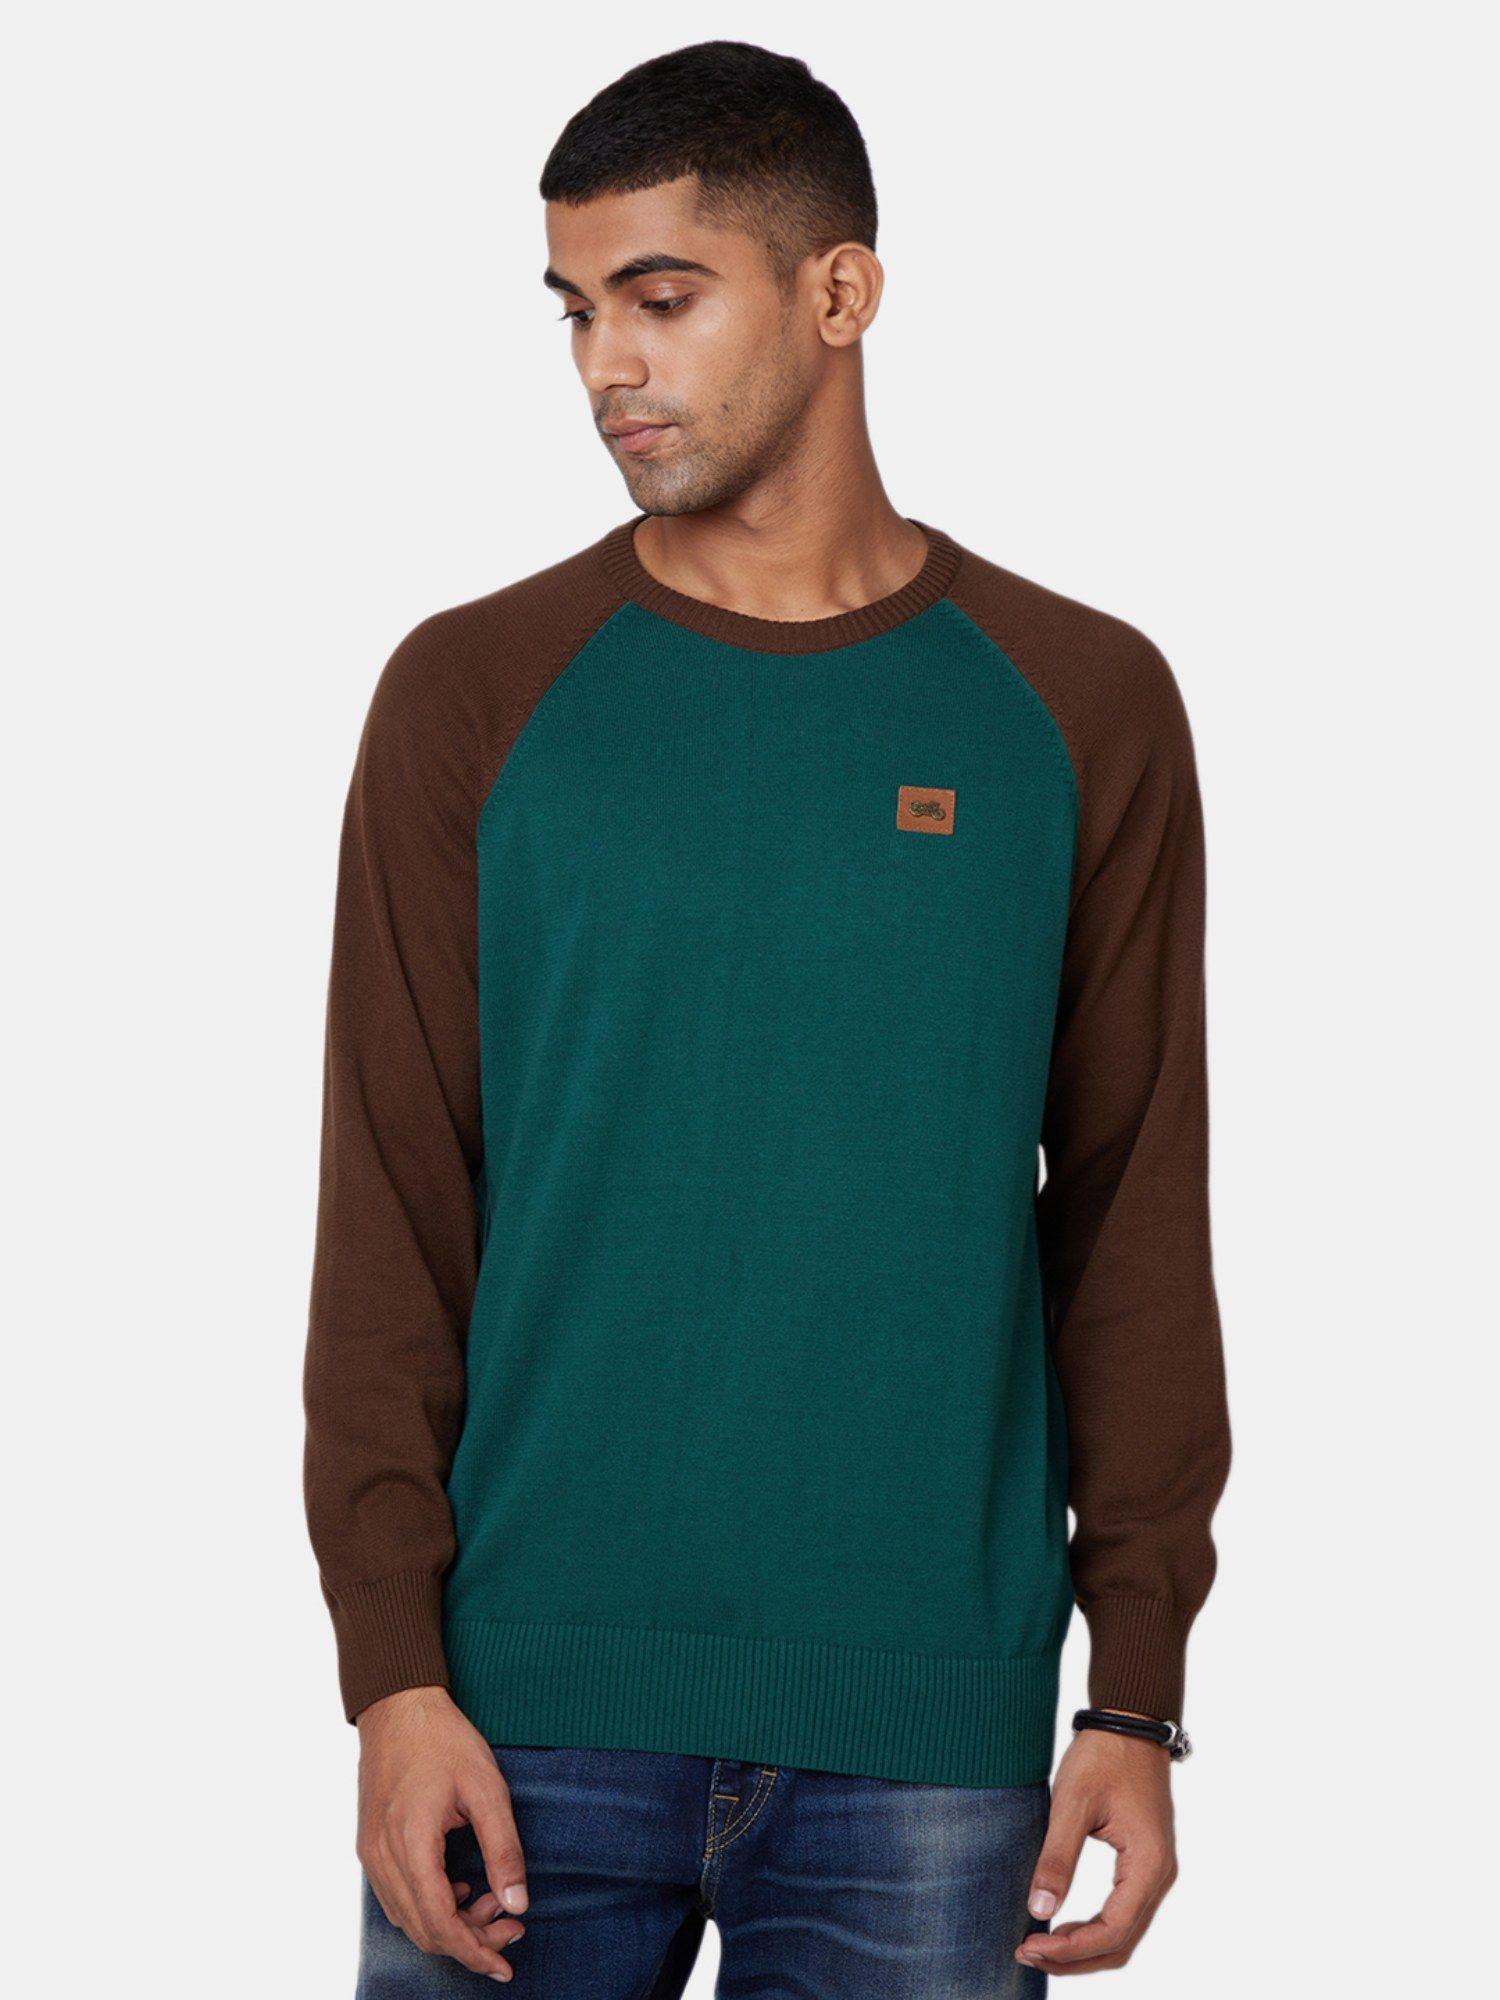 raglan-green-sweater